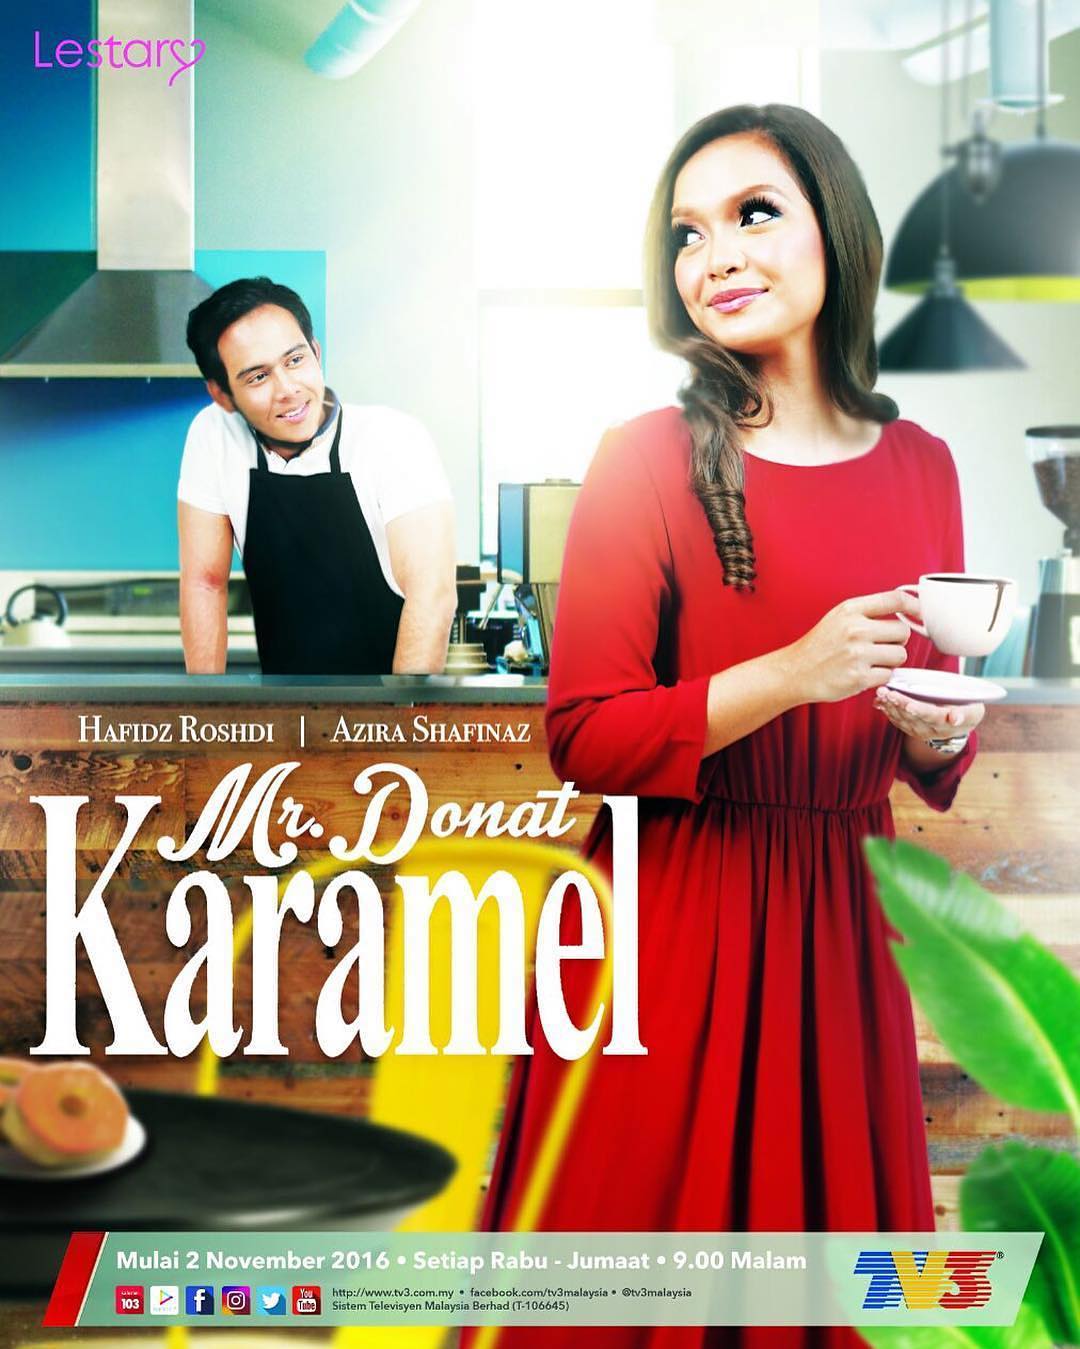 Drama Novel Mr Donut Karamel